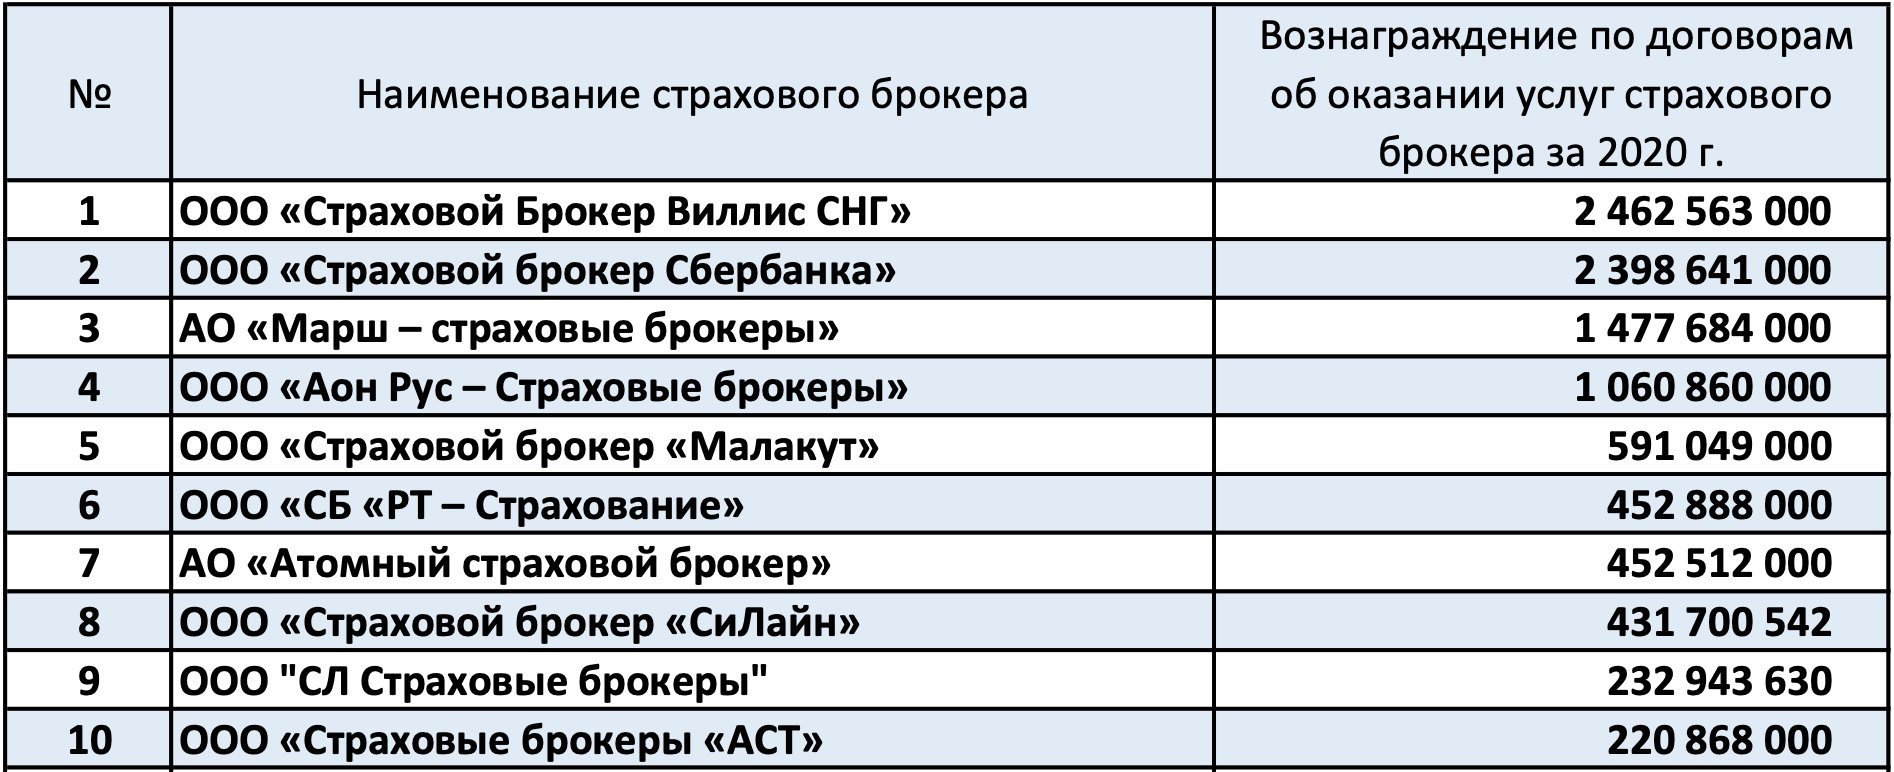 Количество страховых брокеров в РФ по итогам 1 полугодия 2021 года